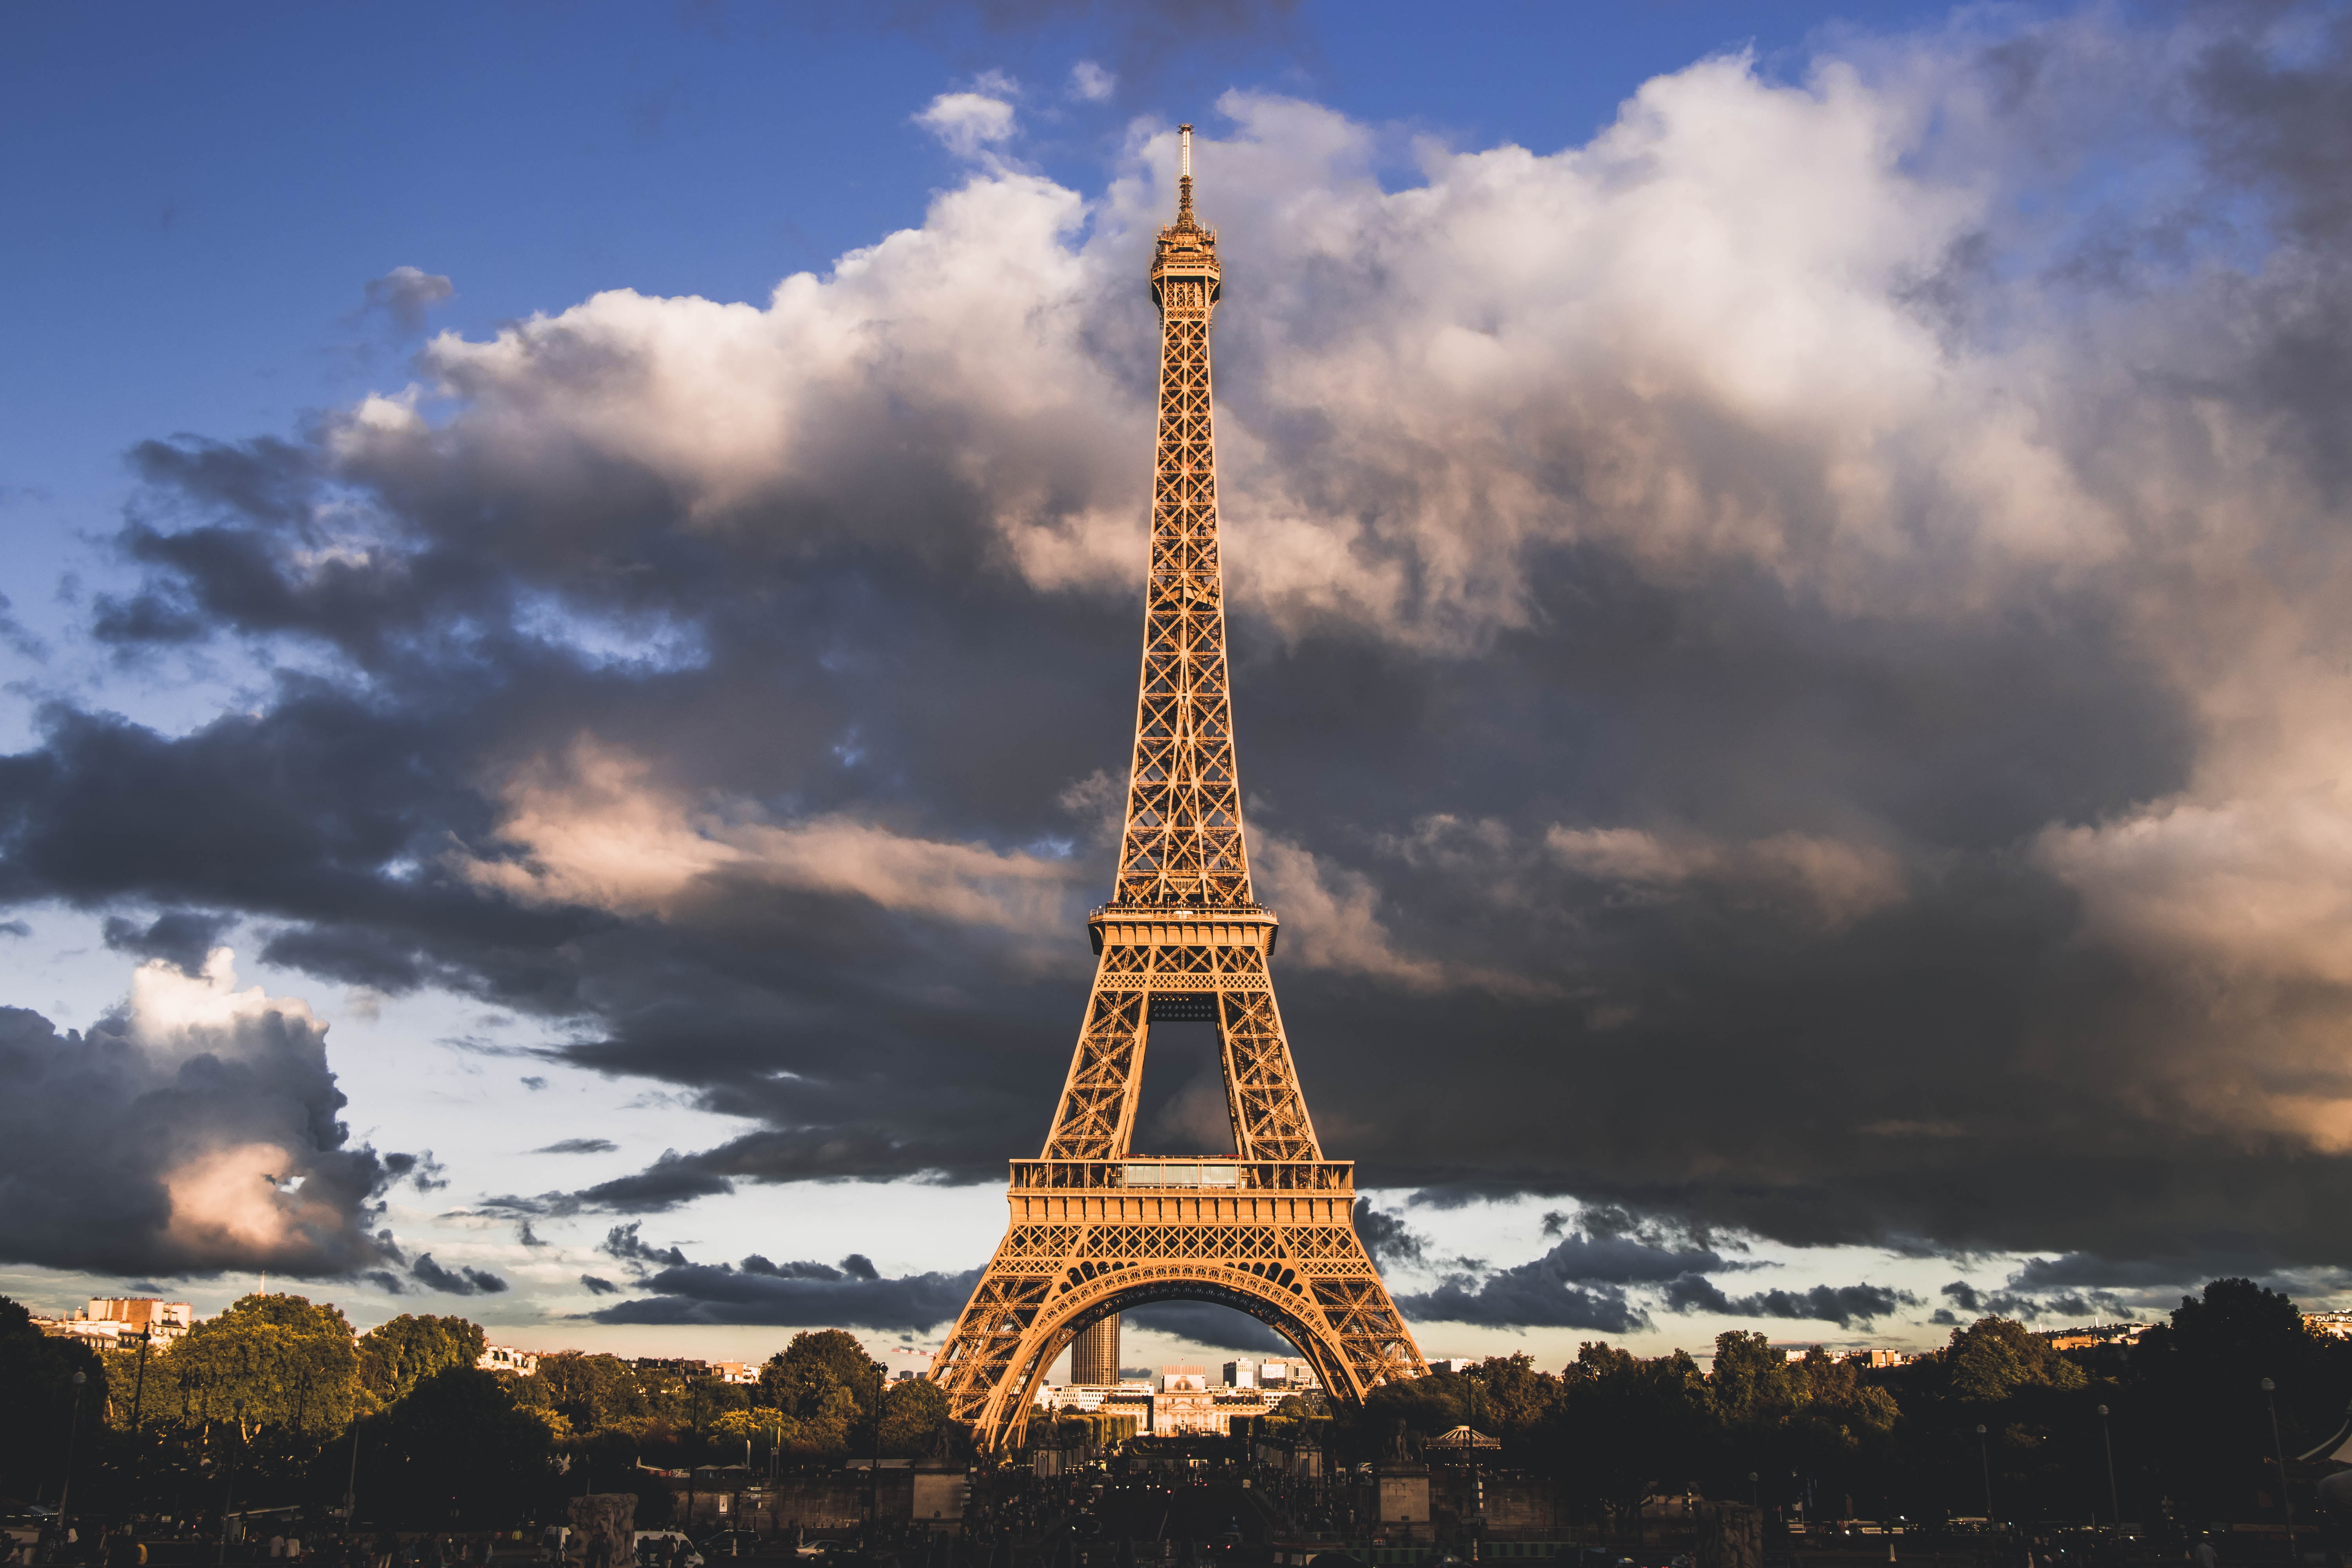 Cerca de 6 millones de personas visitan anualmente la Torre Eiffel, en Francia.   Con motivo de las Jornadas del Patrimonio Europeo, el pasado 16 y 17 de septiembre, se abrieron las puertas  de uno de sus históricos ascensores   (Foto Prensa Libre: Alexis Minchella/ Unsplash)